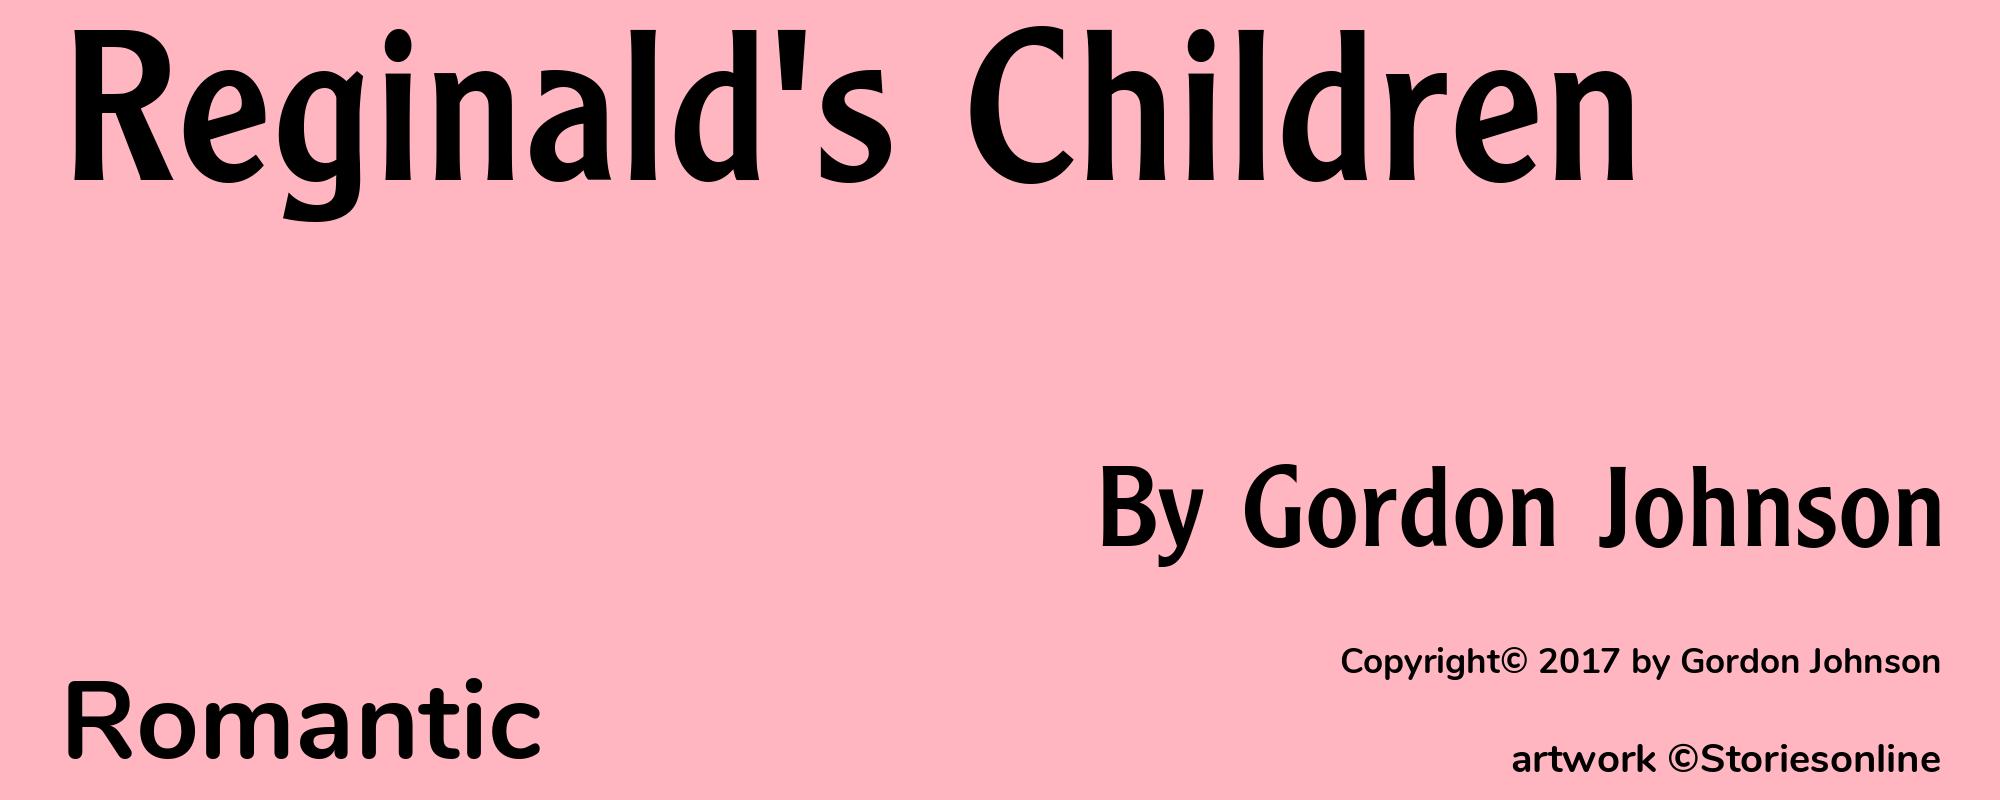 Reginald's Children - Cover